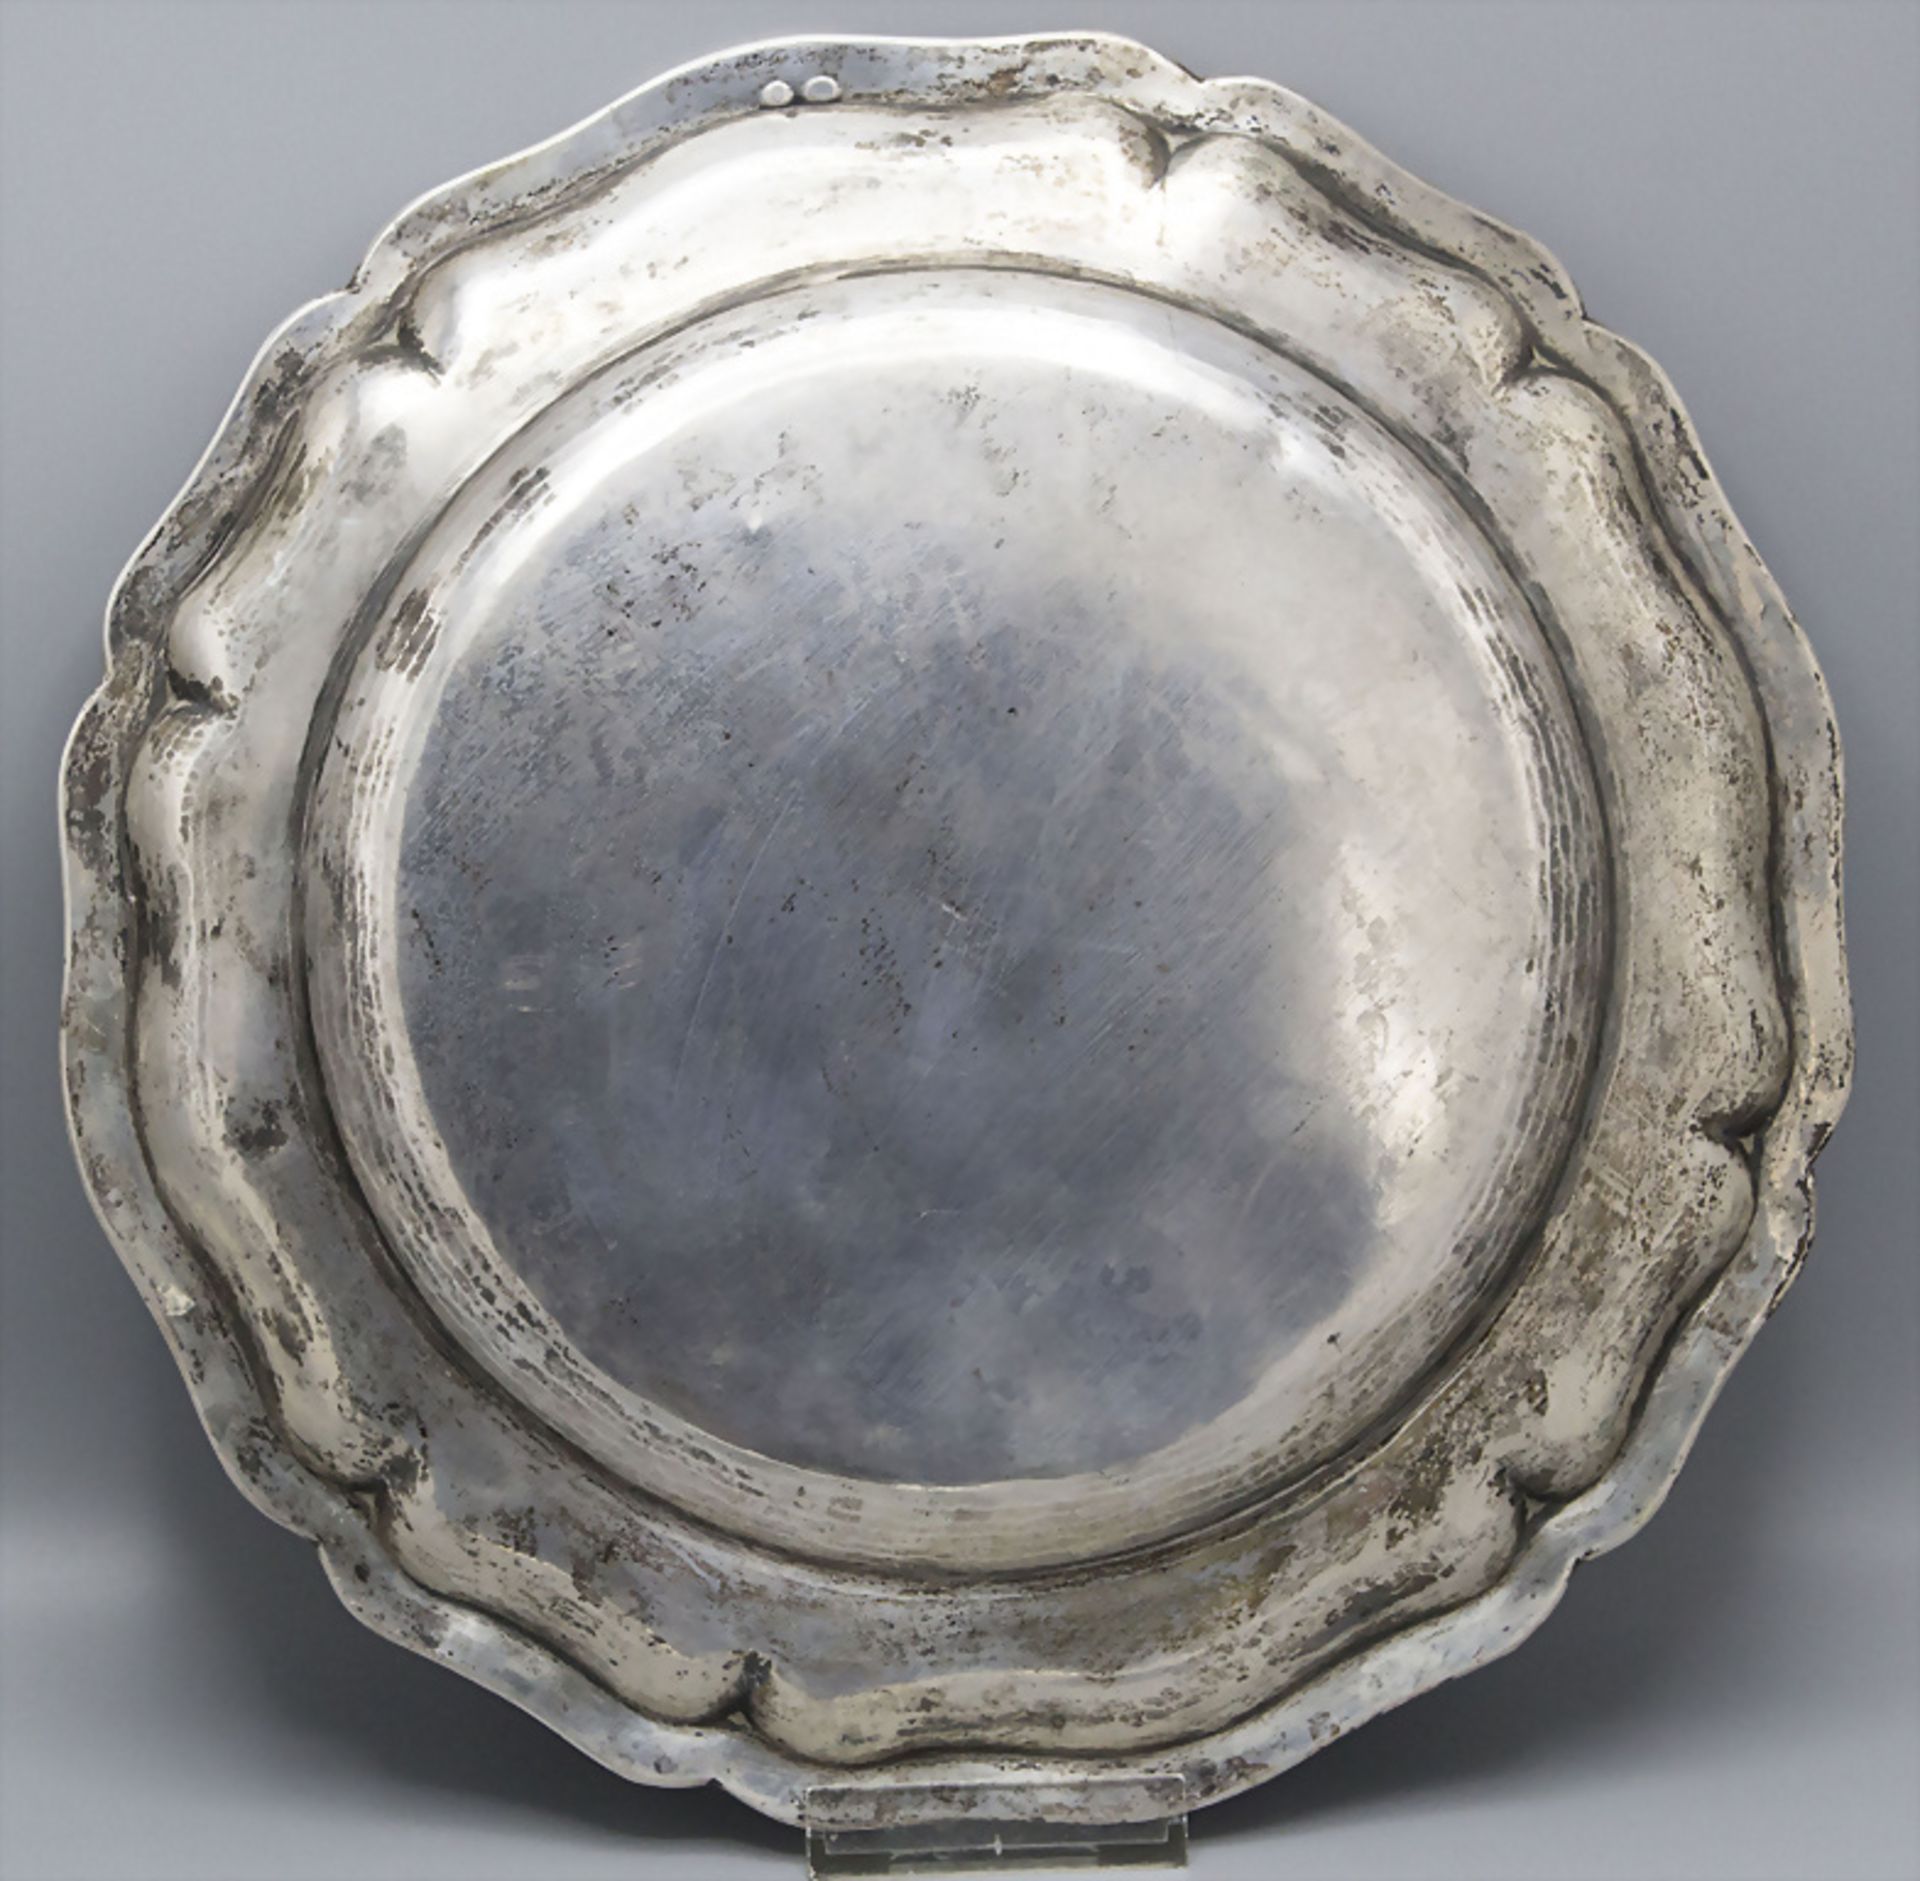 Silberteller / A silver plate, Wien, um 1900 - Image 2 of 3